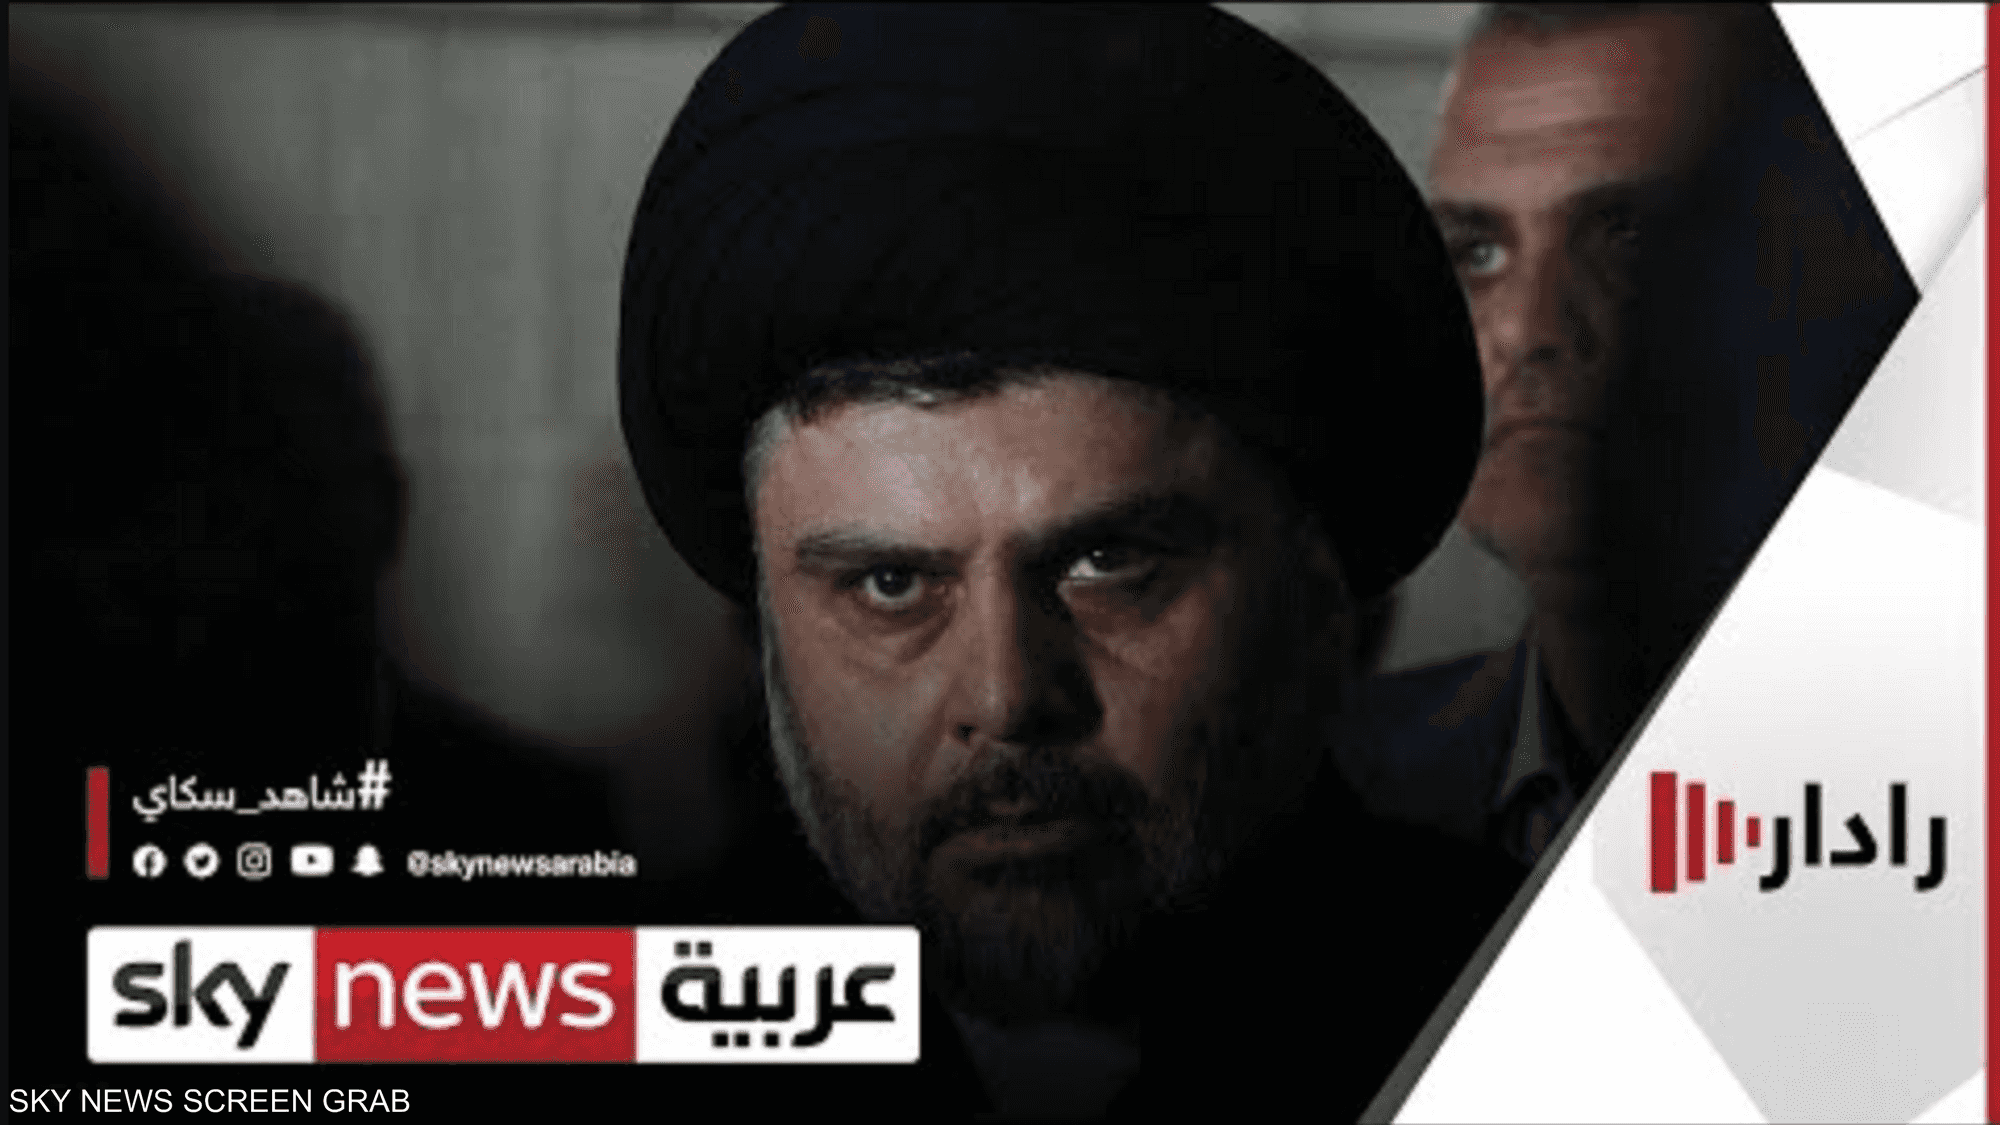 العراق.. انقسامات داخل الإطار التنسيقي بشأن دعوة التيار الصد